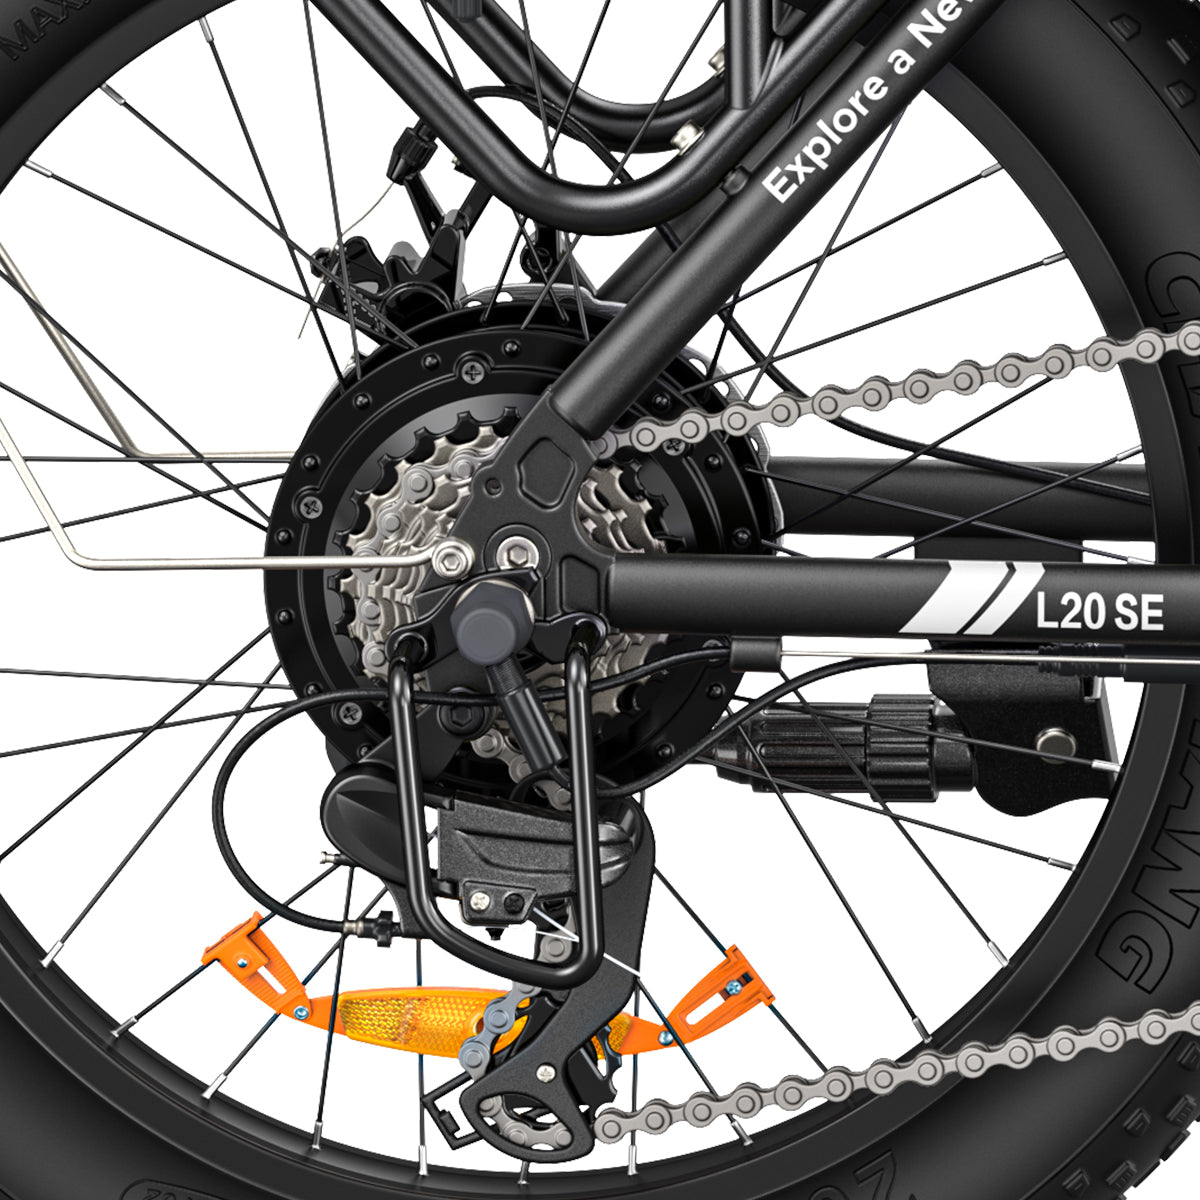 Engwe L20 SE * 2 E-Bikes Bundle [Pre-Order]